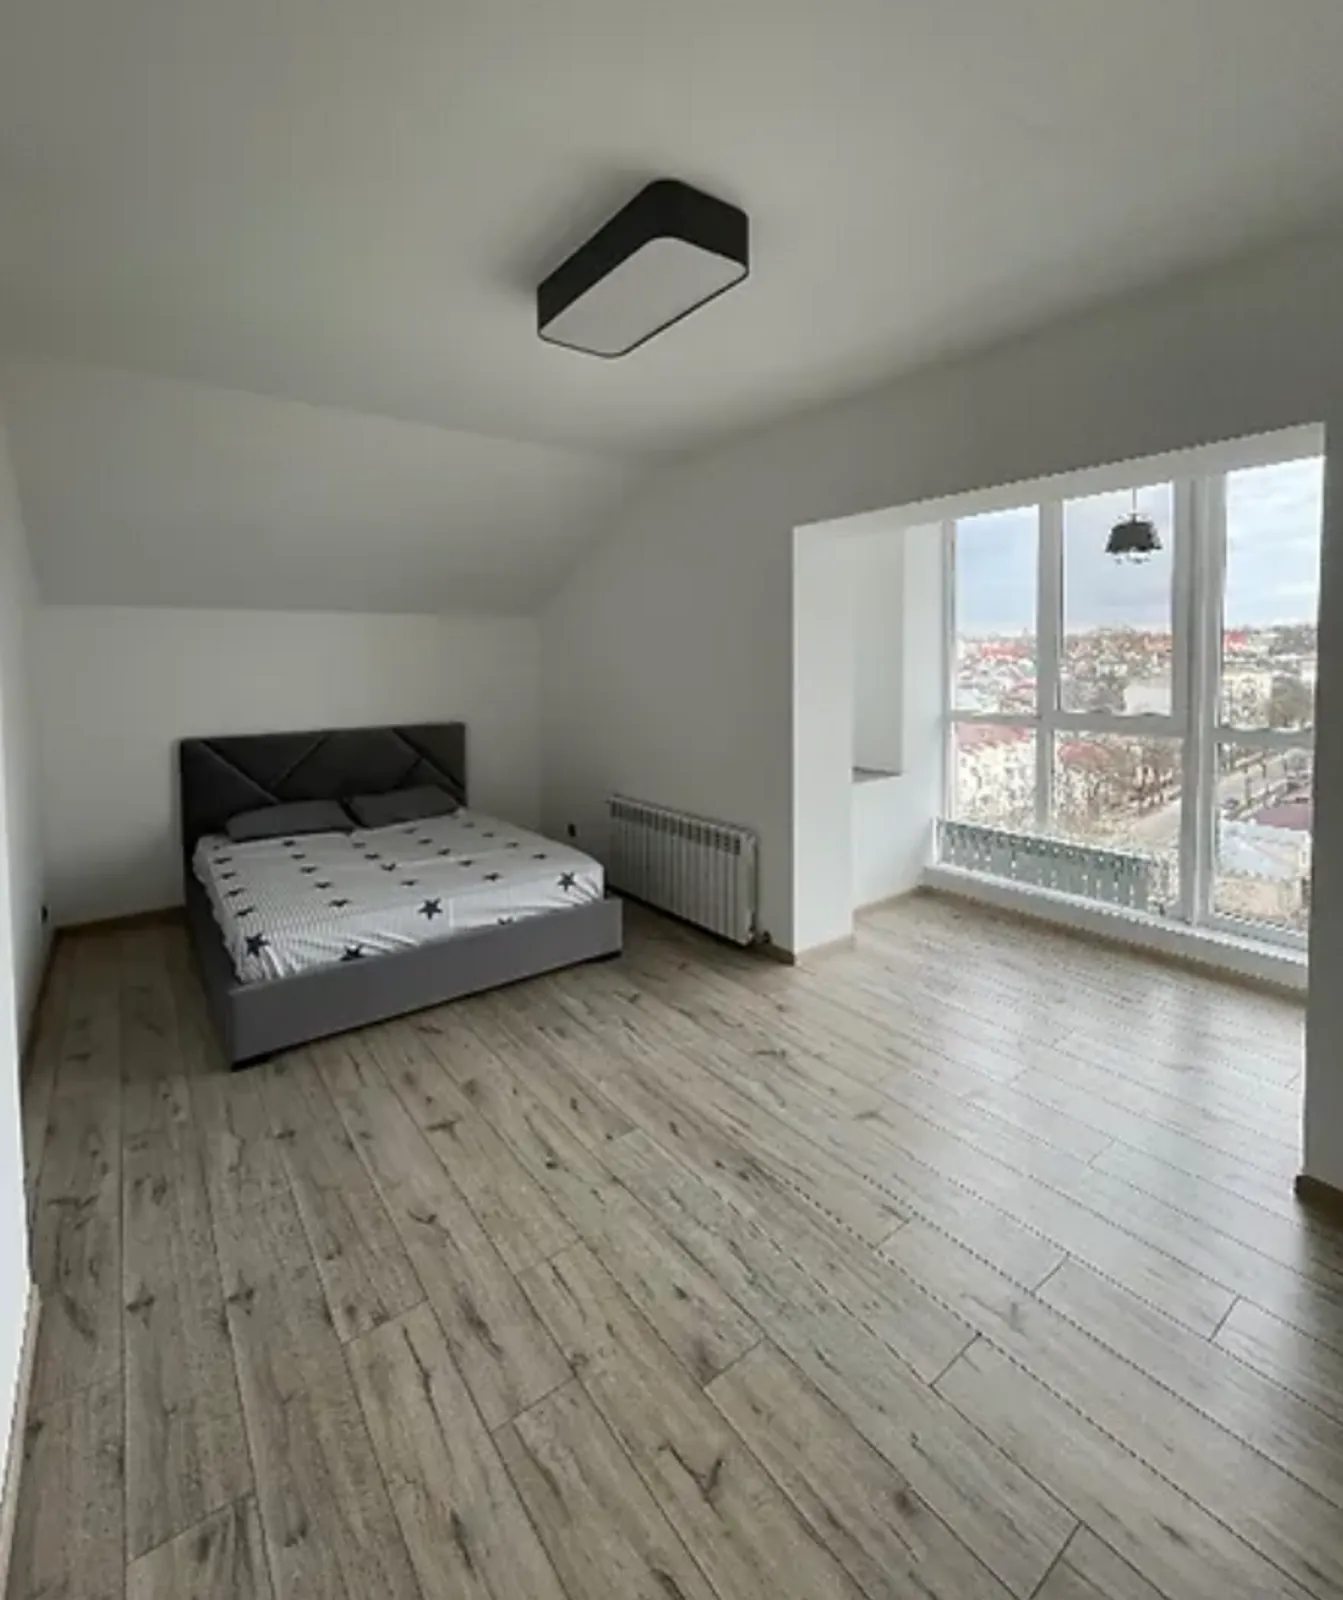 Продам 2-ох кімнатну квартиру в новобудові з дизайнерським ремонтом в центрі міста